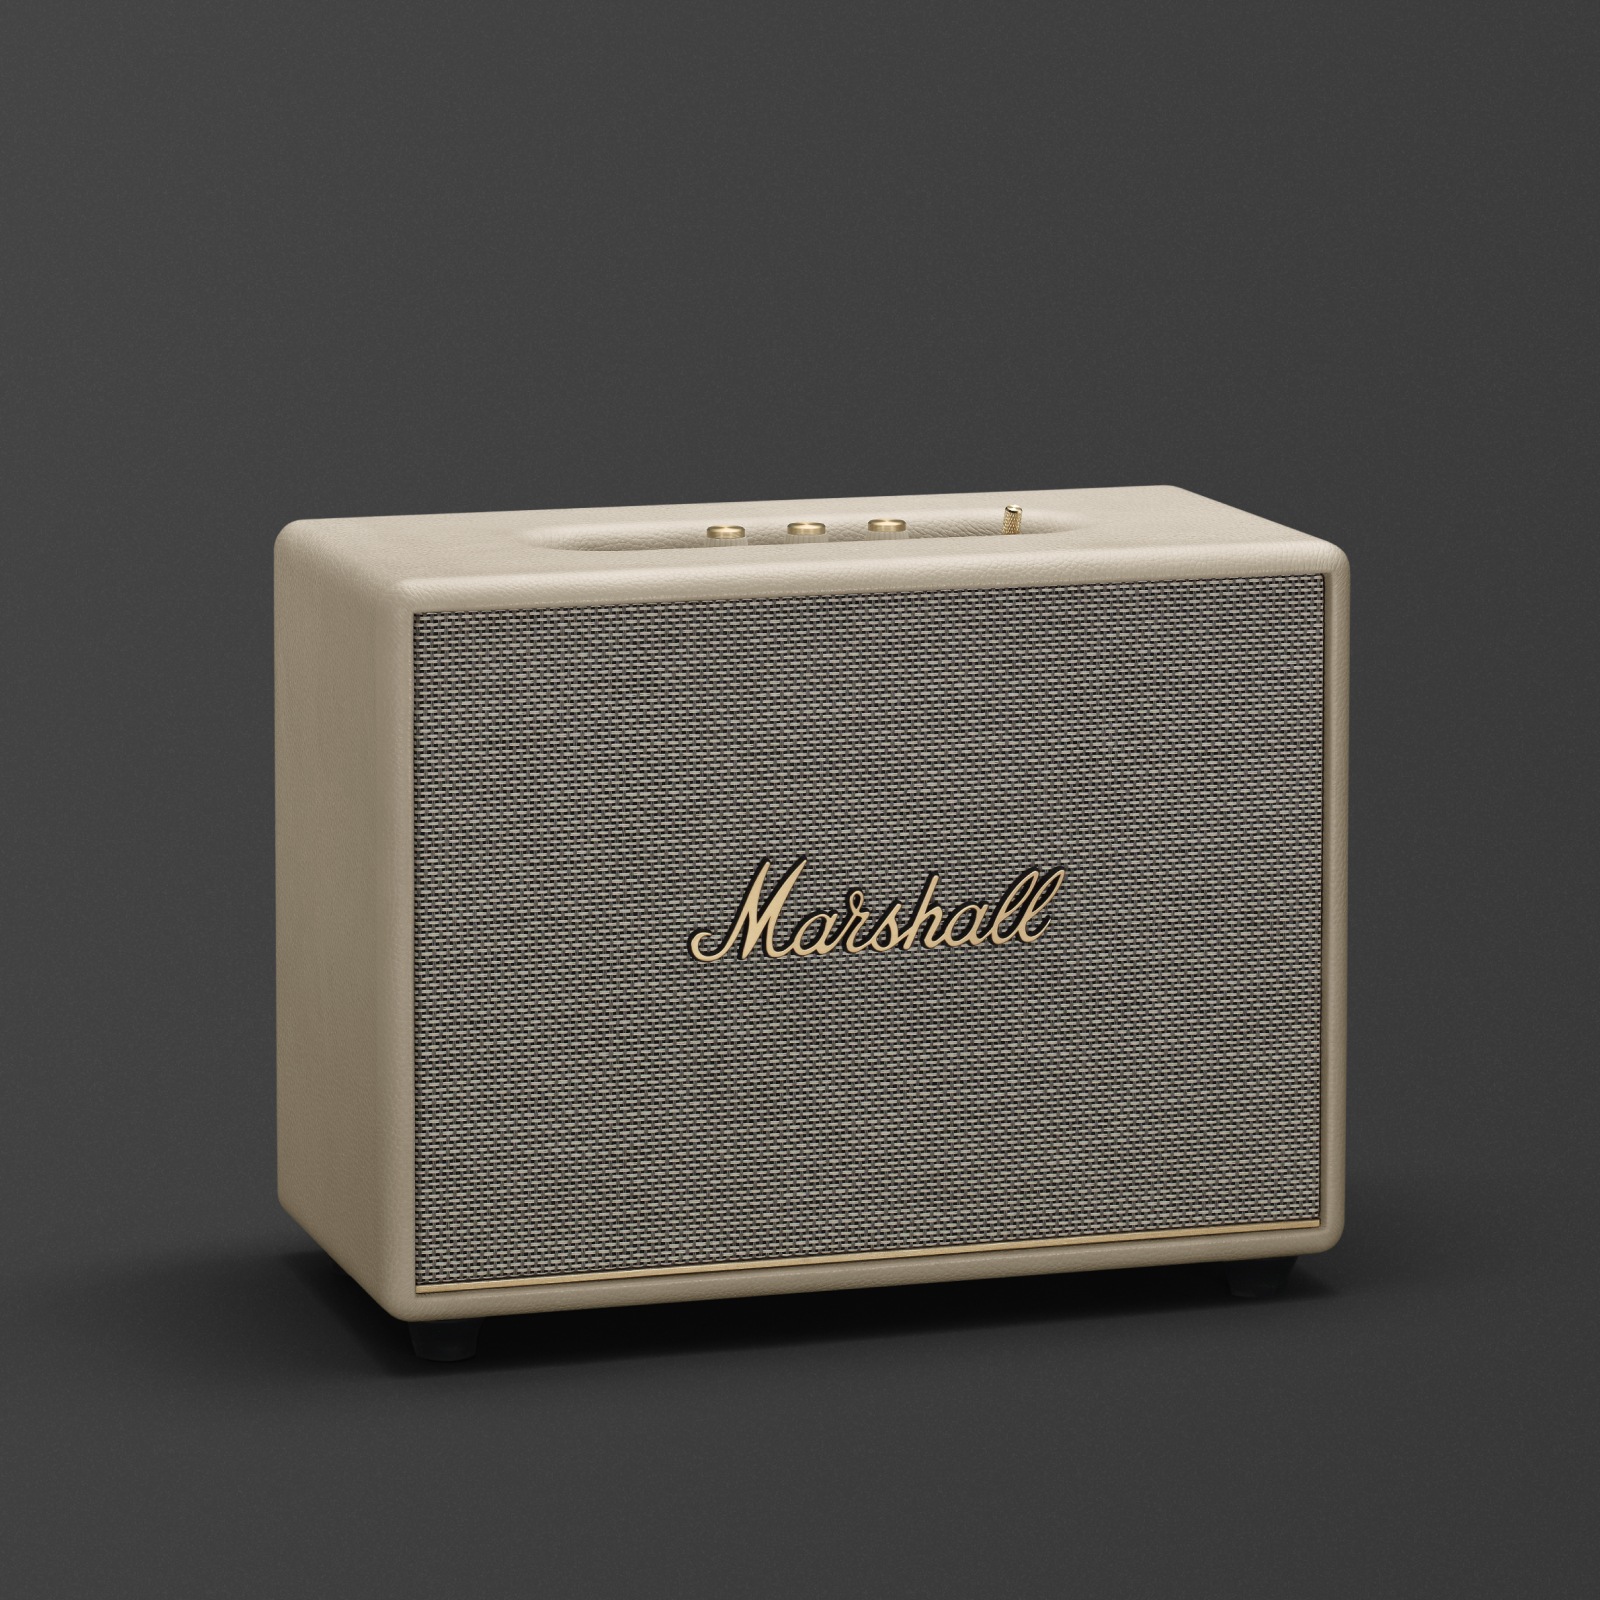 Marshall Woburn III Cream Bluetooth-Lautsprecher. Dieser Marshall Home-Lautsprecher, der auch in Weiß erhältlich ist, ist das Modell Woburn III Cream.